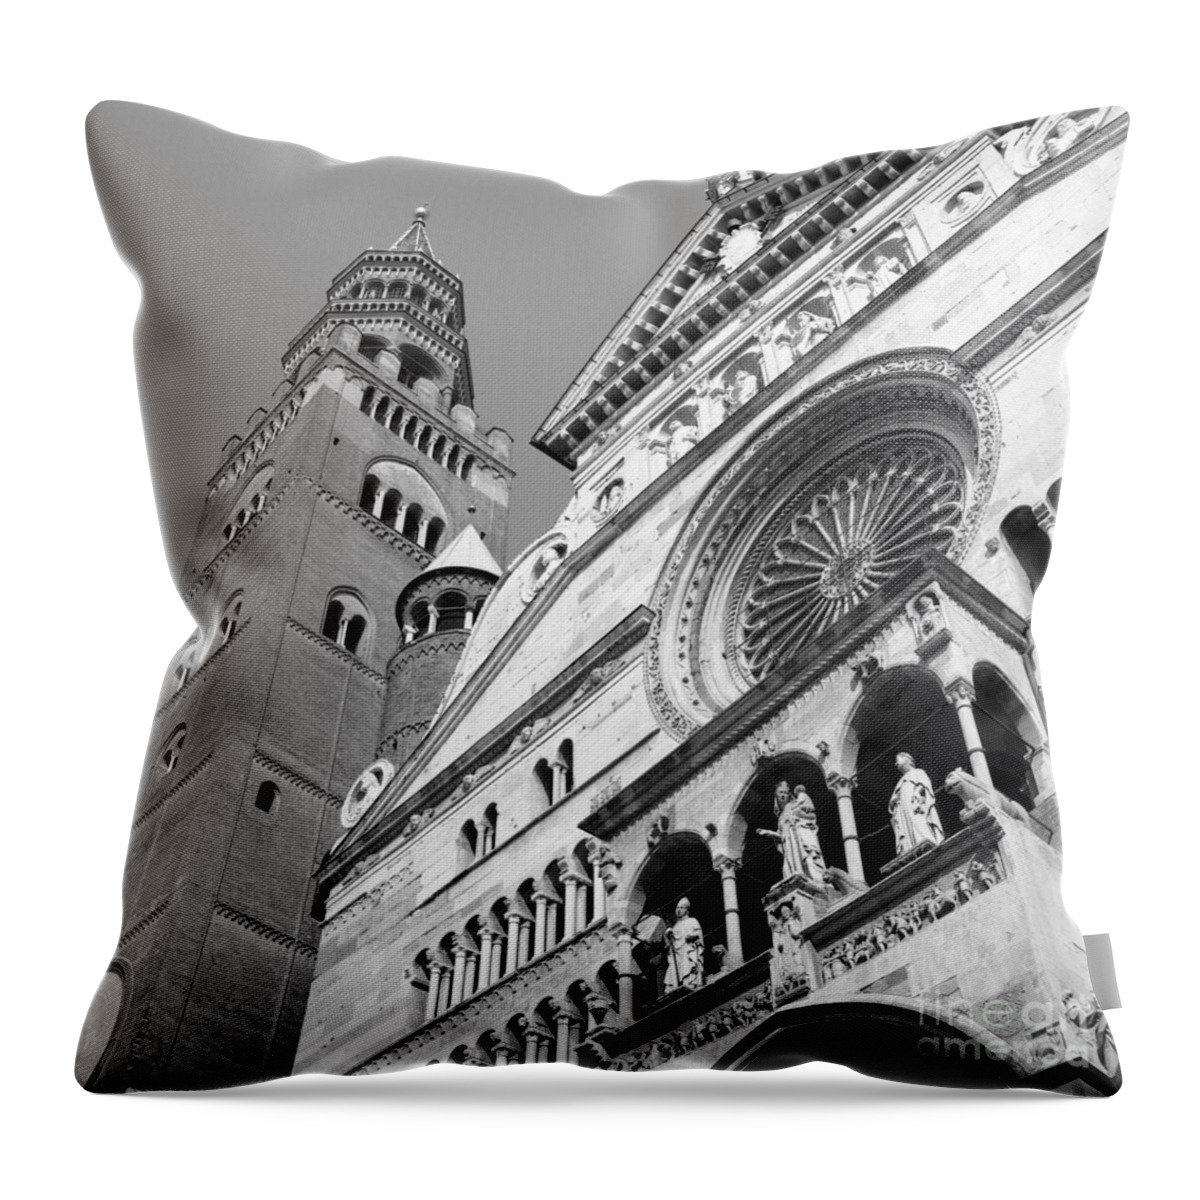 Duomo Throw Pillow featuring the photograph Duomo di Cremona e Torrazzo by Riccardo Mottola